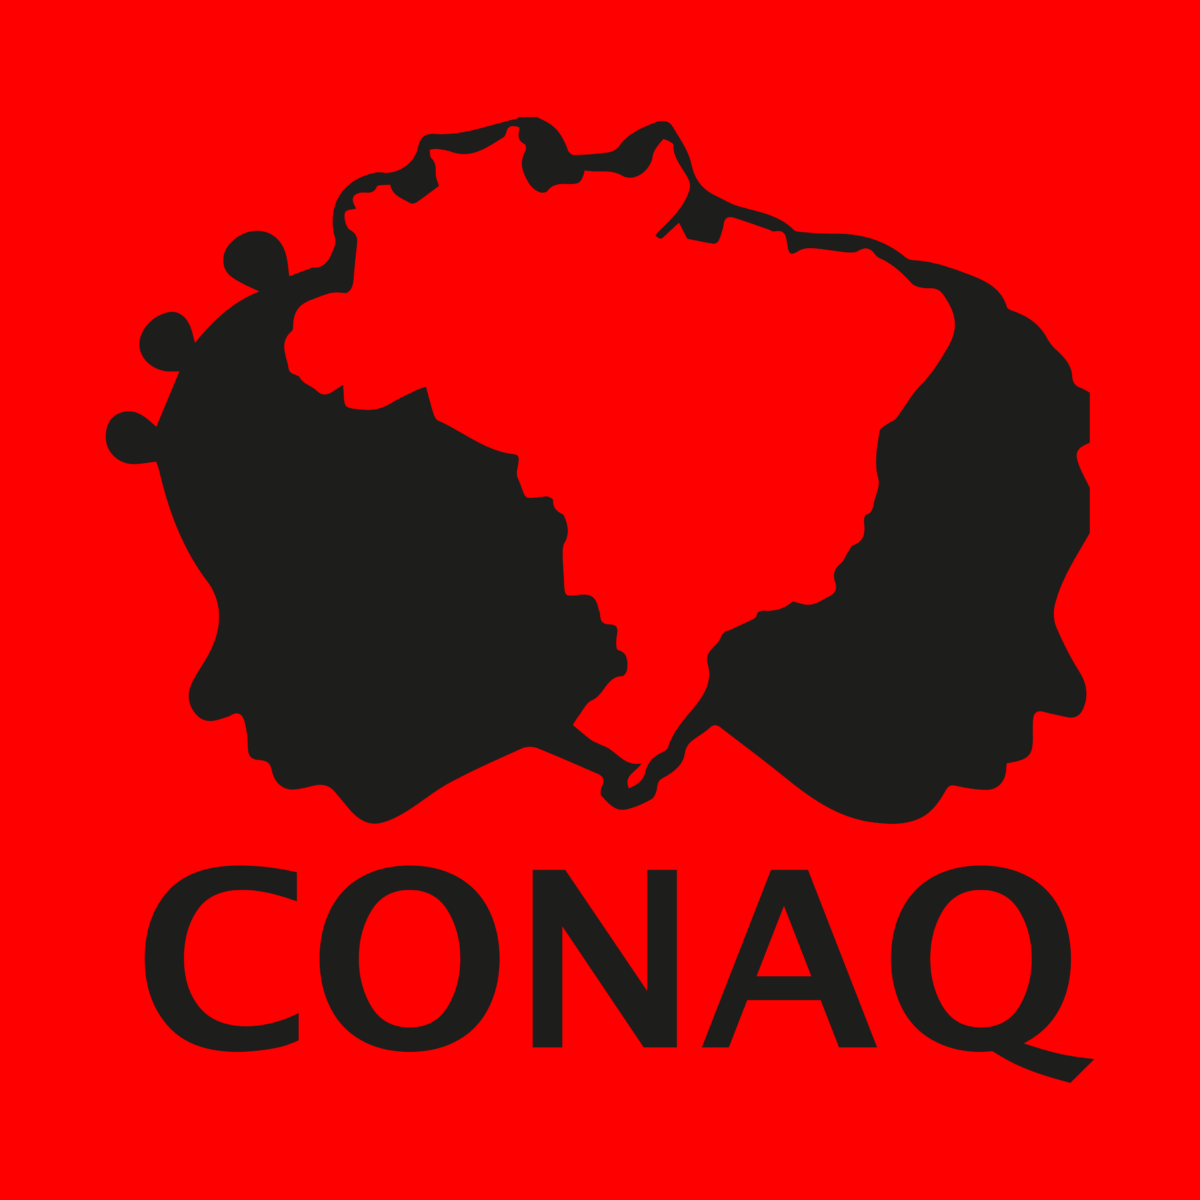 CONAQ realiza em Tocantins Oficina de Fortalecimento Institucional e Coletivo na Região Norte entre 14 a 16 de junho